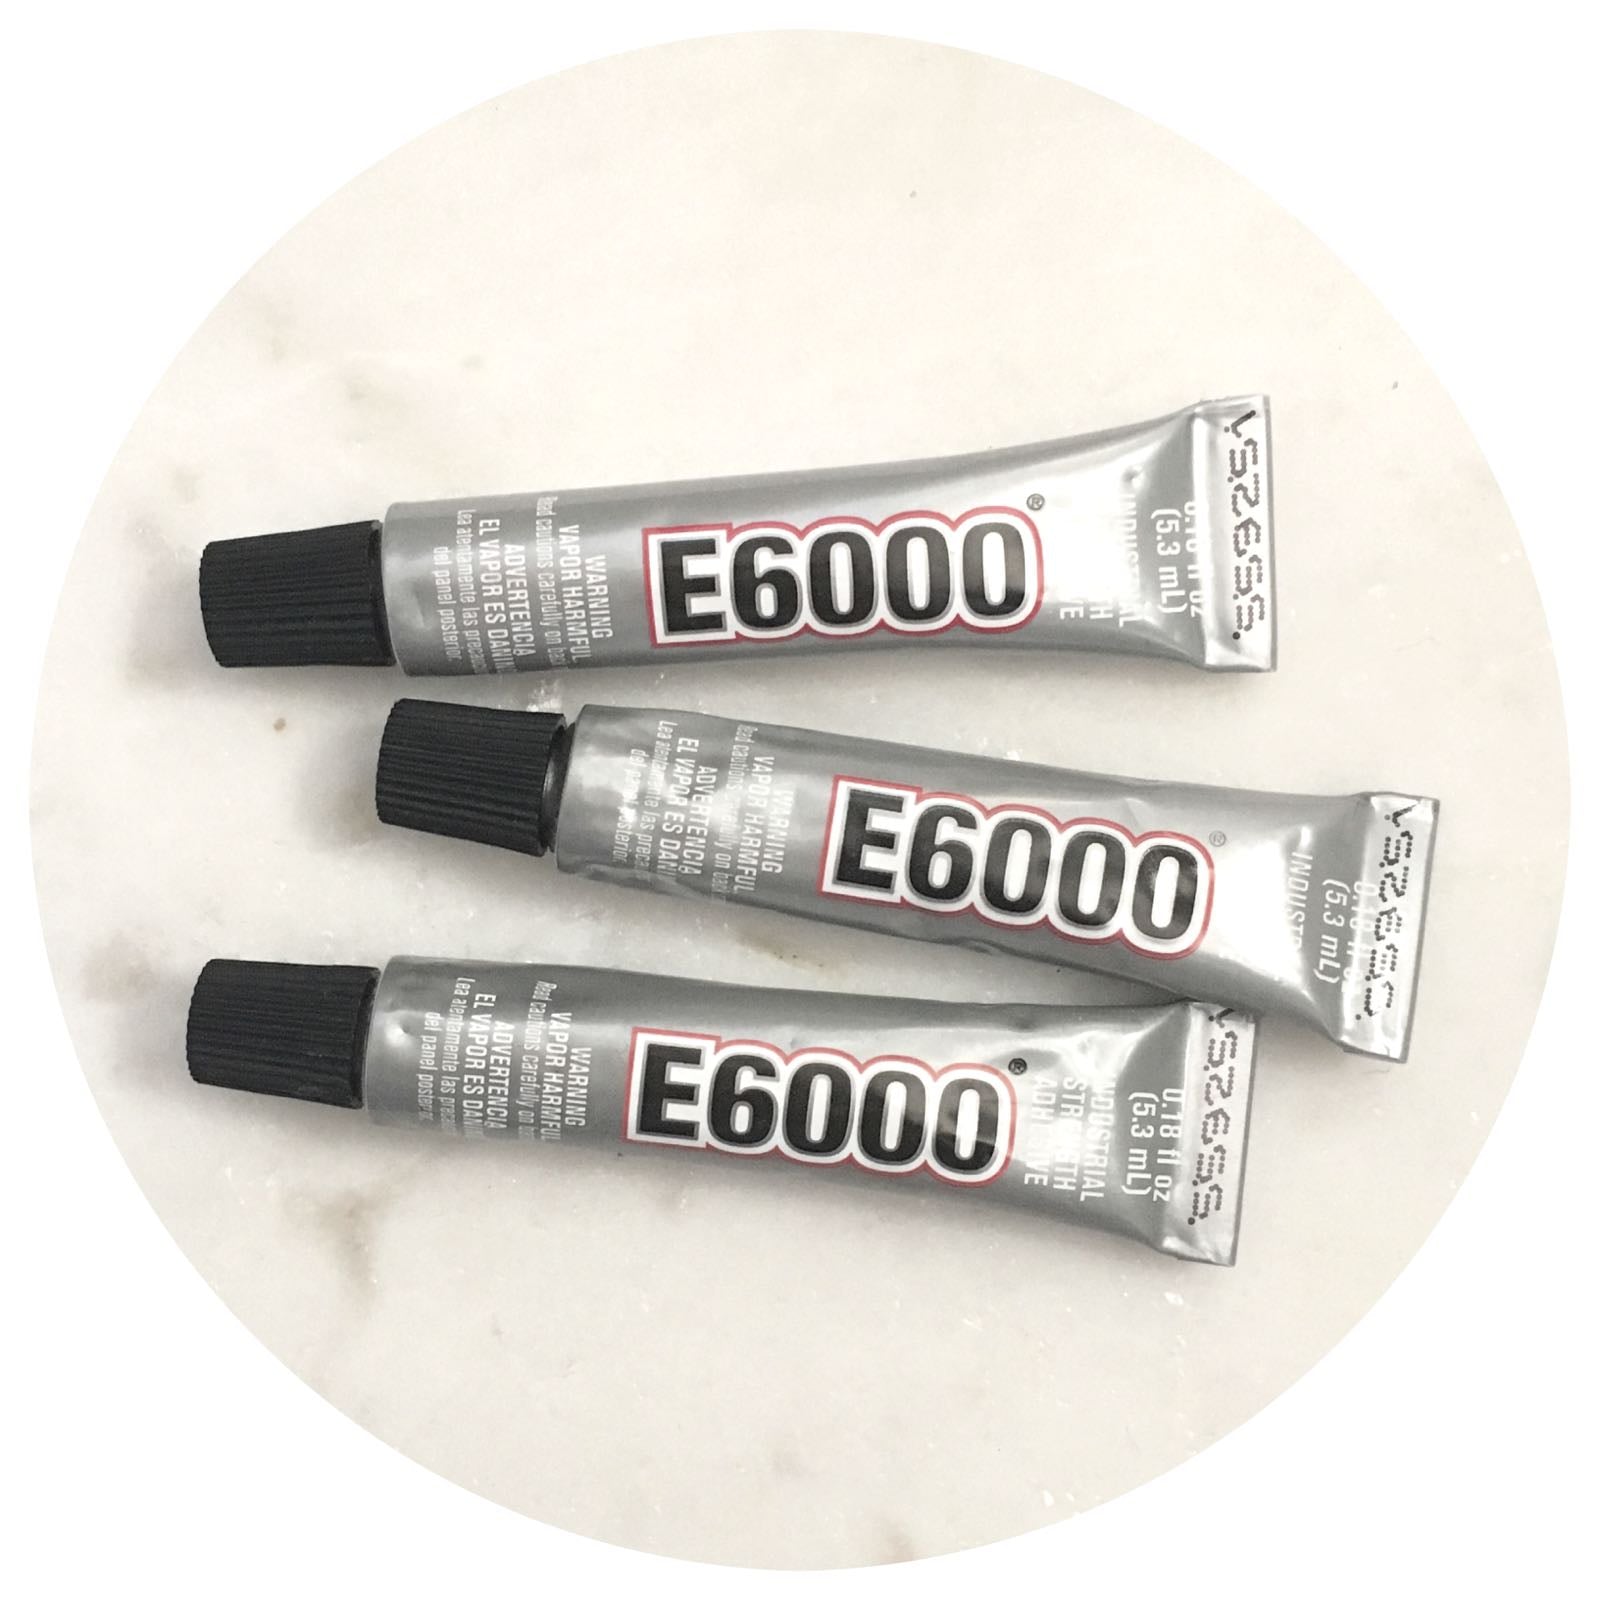 E6000 Glue Adhesive with Precision Tips - 40.2g - Each - AJ Craft Supplies